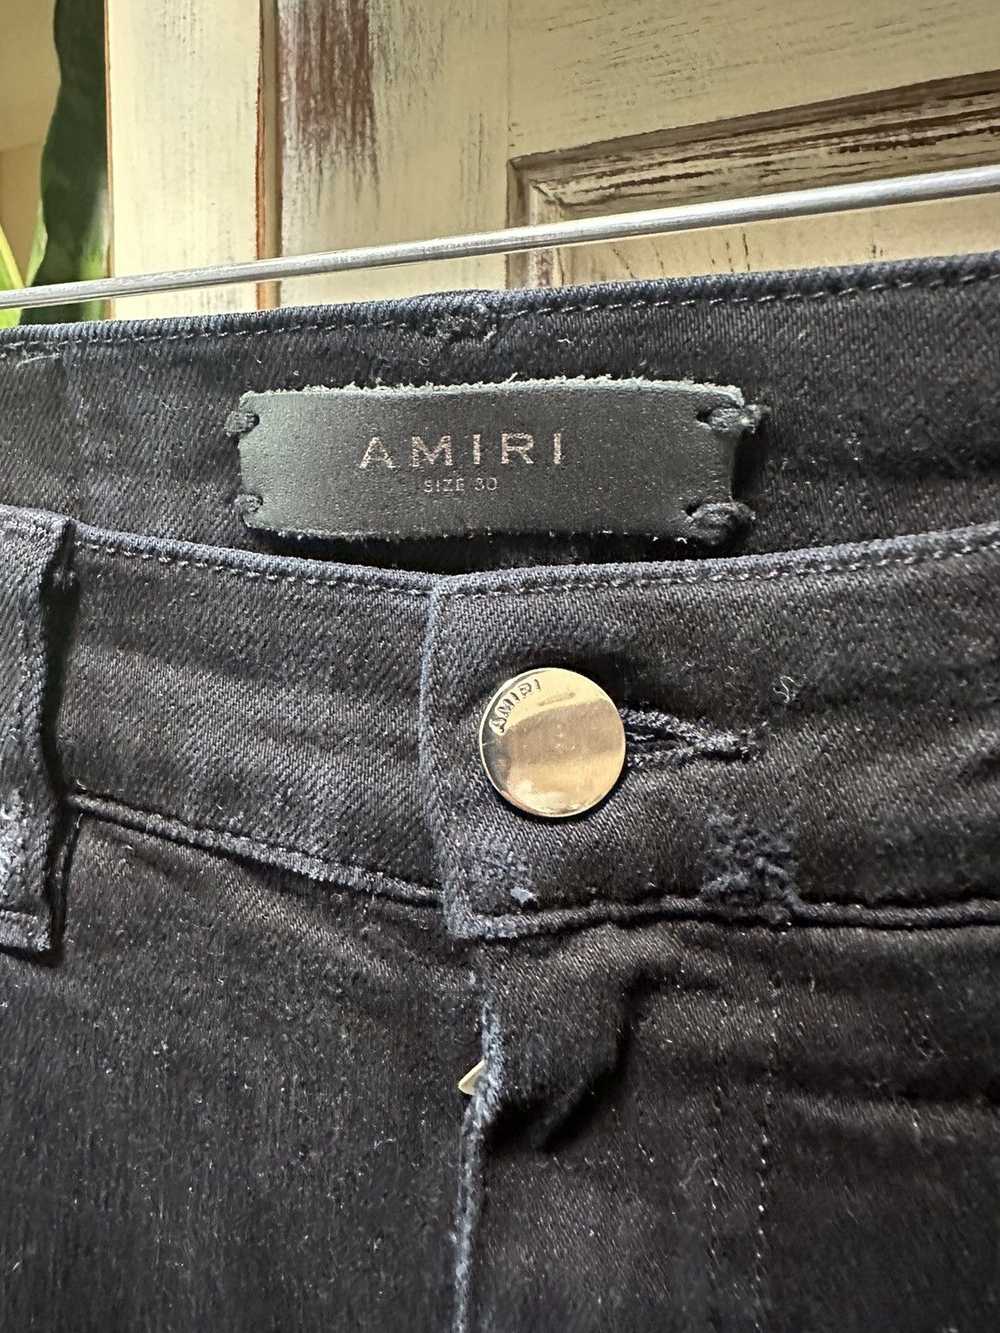 Amiri Mike Amiri Trasher jeans black and white si… - image 3